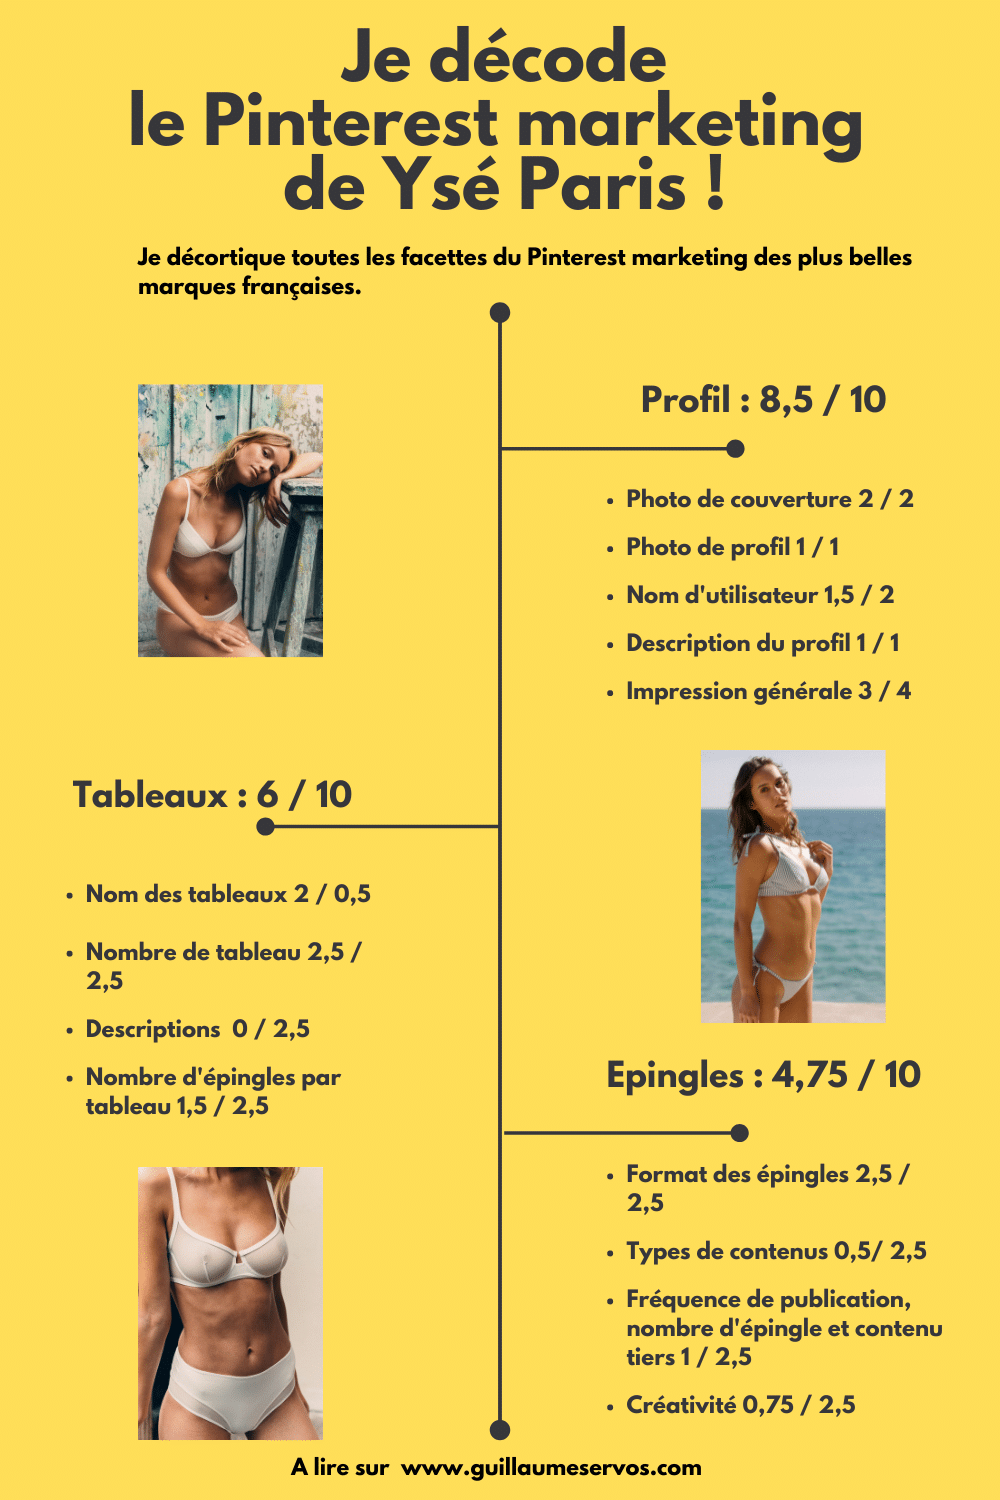 Infographie je décode le marketing Pinterest de Ysé Paris